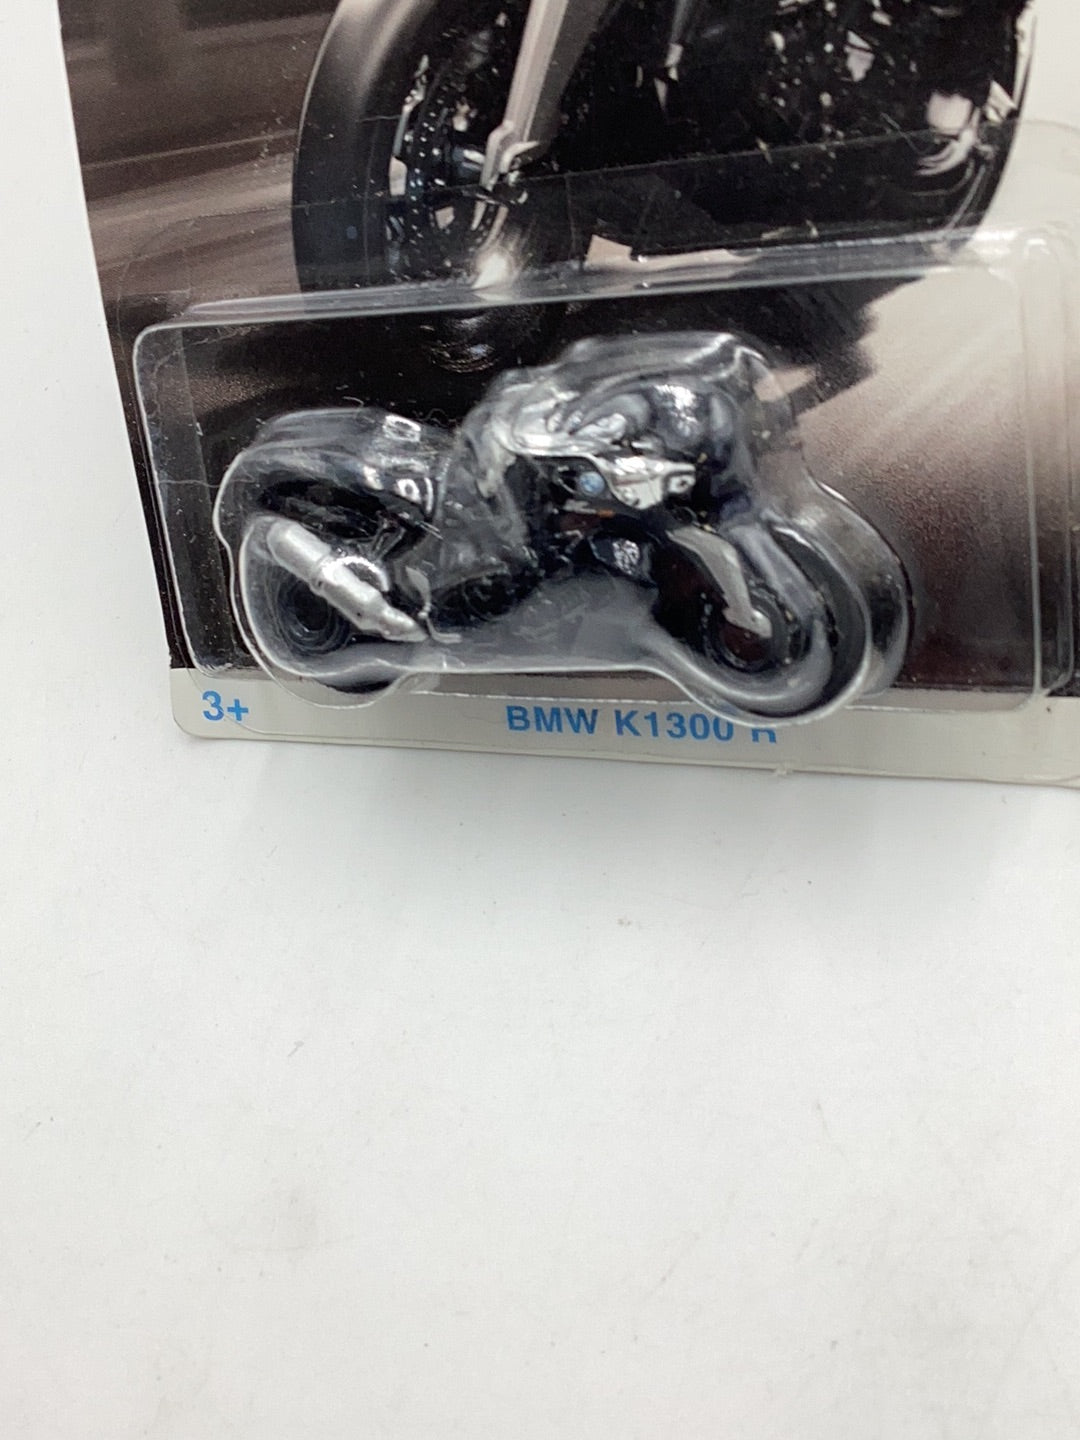 Hot wheels BMW series BMW K1300 R Walmart exclusive